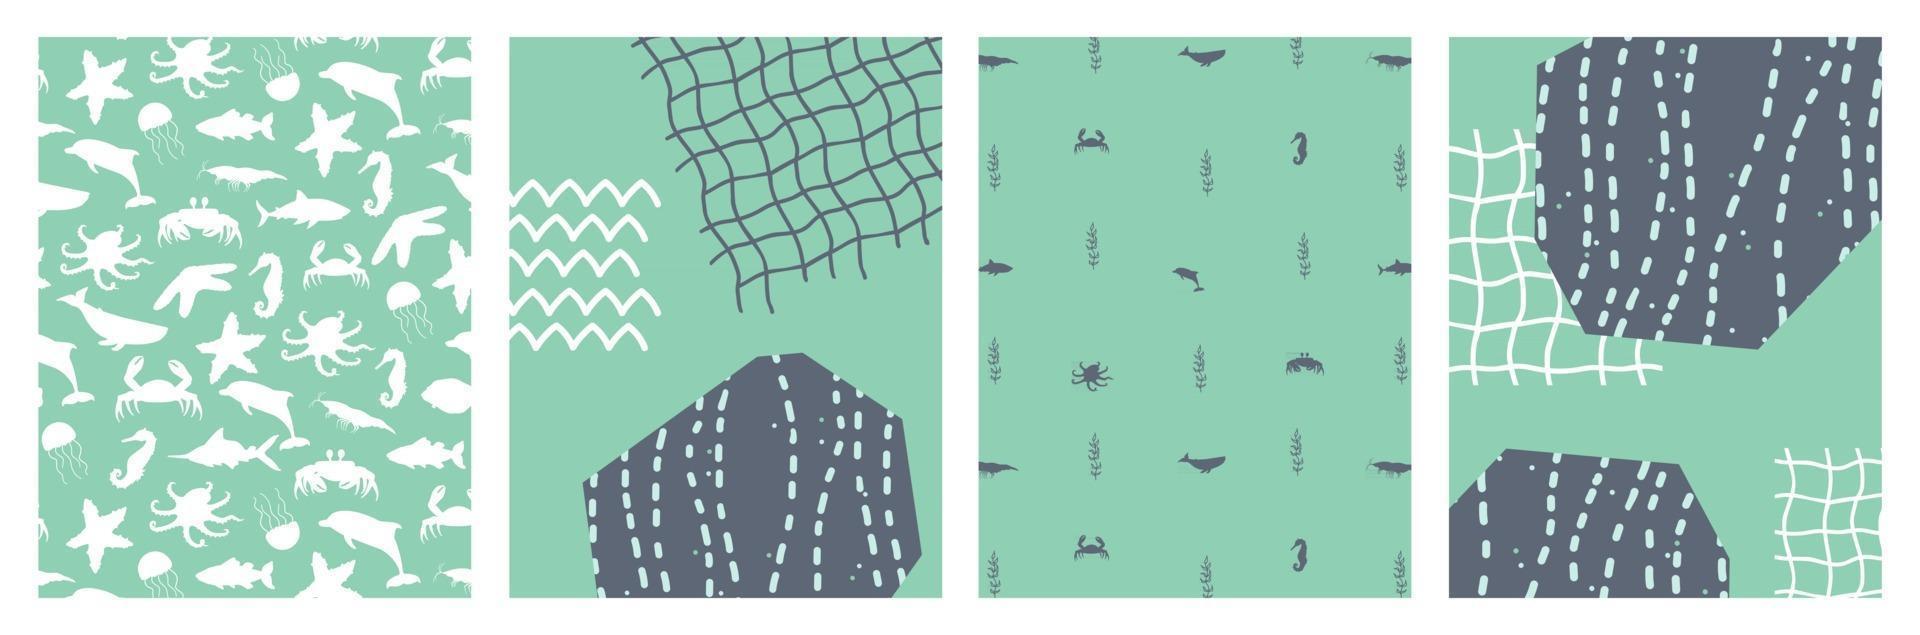 ensemble d'affiches abstraites océan mer avec silhouette de dessin animé poisson poulpe crabe raie pastenague étoile de mer algues plantes aquatiques illustration vectorielle bannière carte carte postale vecteur